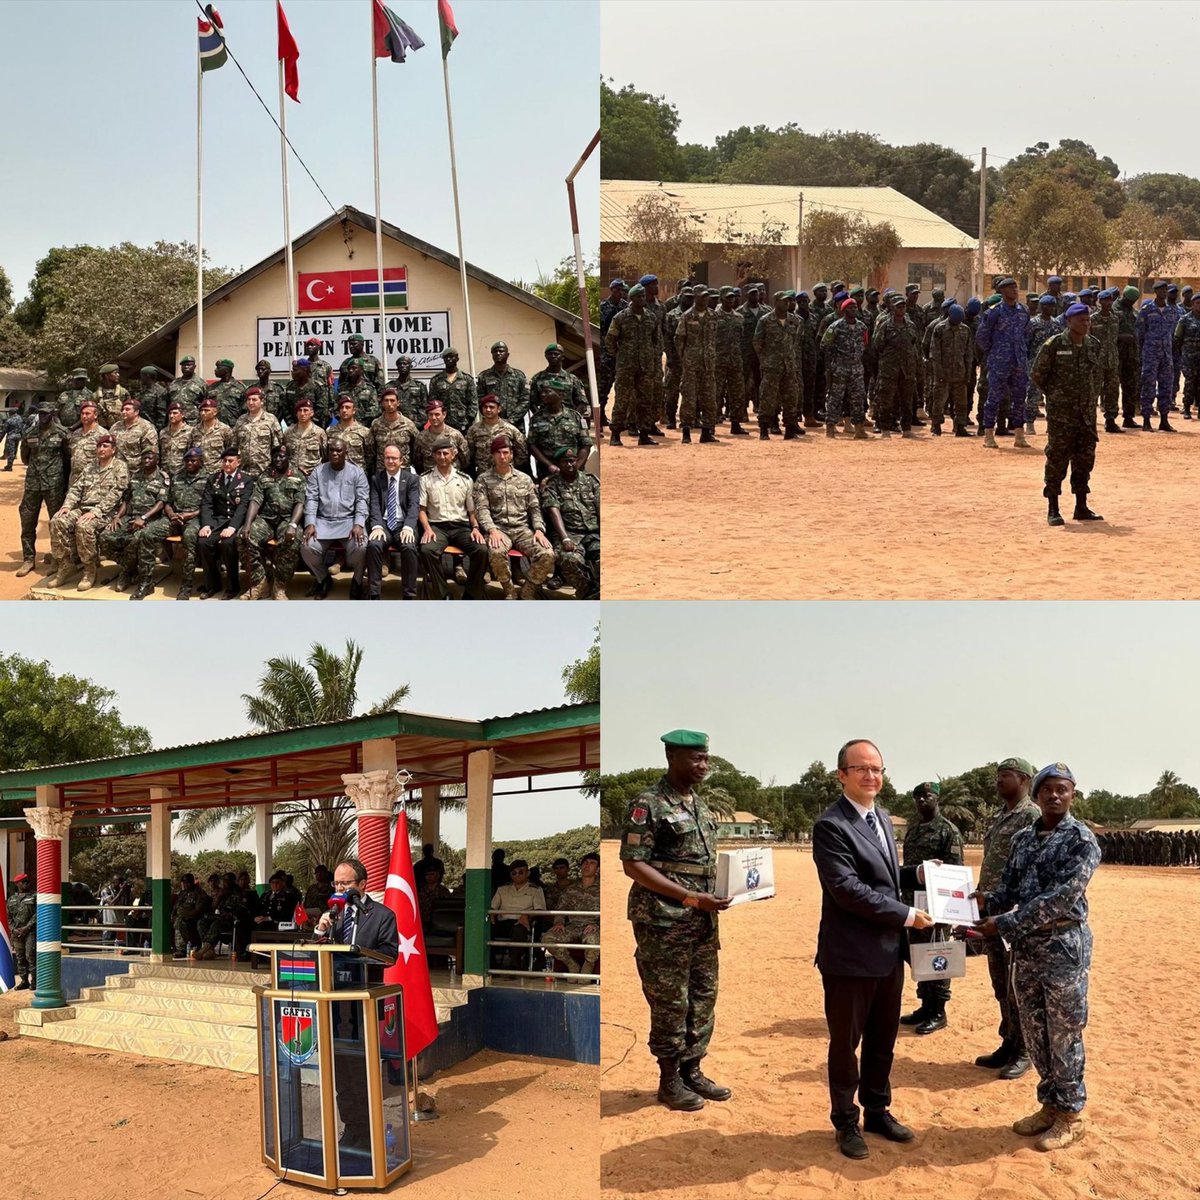 ➕351 Gambiyalı asker, Türk askerlerinin eğitim desteğiyle İslam İşbirliği Teşkilatı Zirvesi için hazırlandı

▪️ Eğitimin kapanış törenine Türkiye'nin Banjul Büyükelçisi Oba, Gambiya Savunma Bakanı Njie, Gambiya Genelkurmay Başkanı Cham ve çok sayıda asker katıldı.